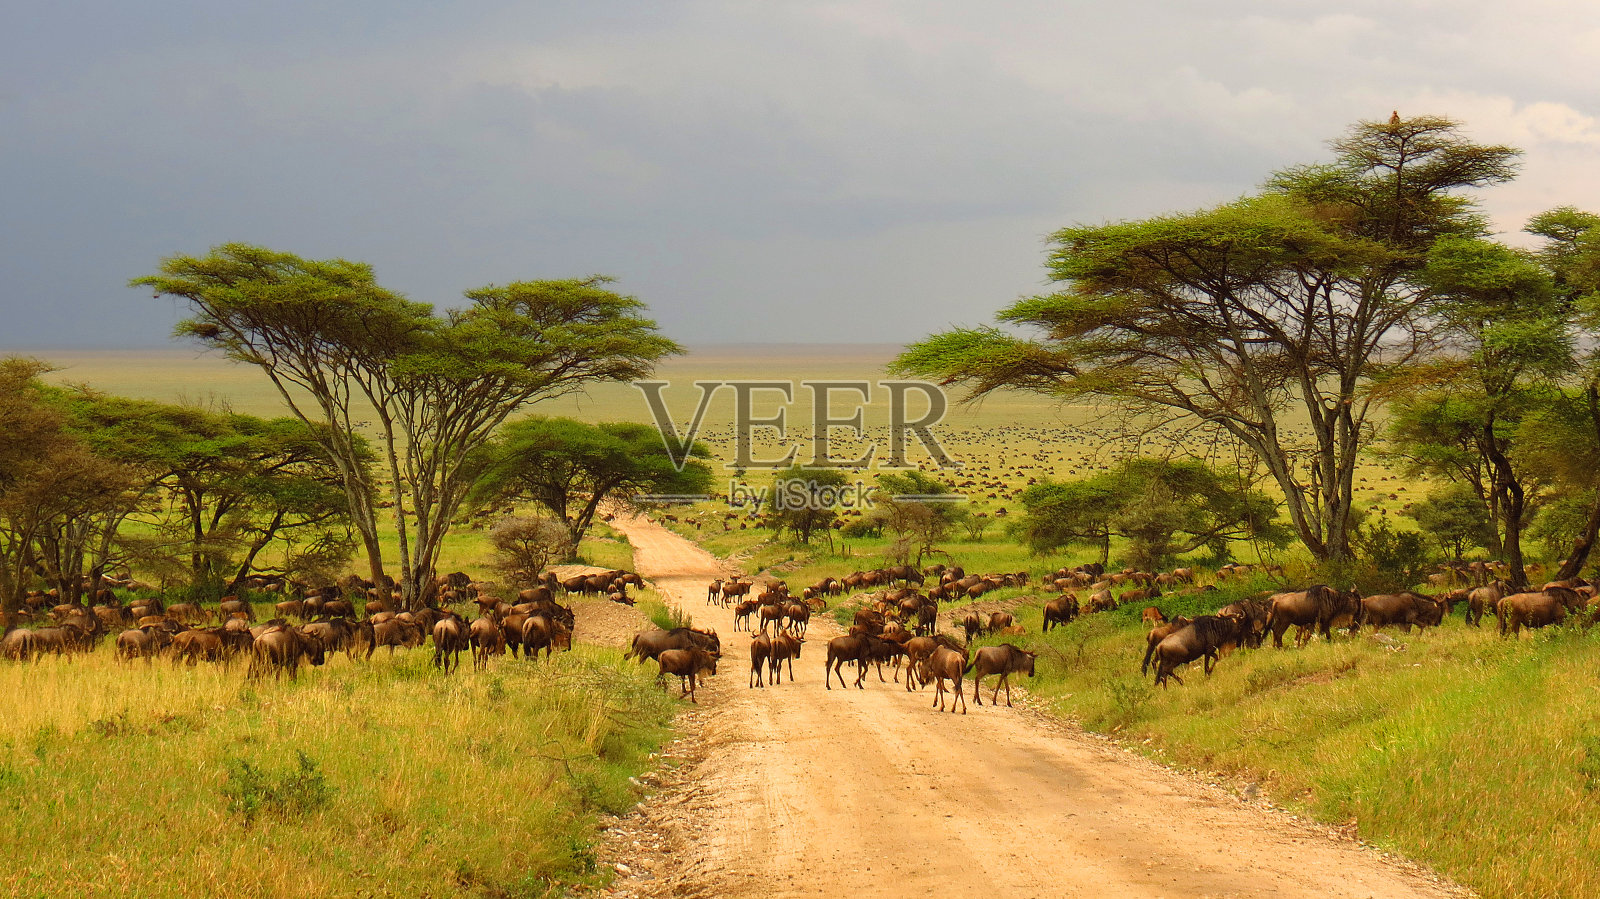 塞伦盖蒂平原坦桑尼亚非洲角马迁徙动物野生动物野生动物园树木道路草照片摄影图片